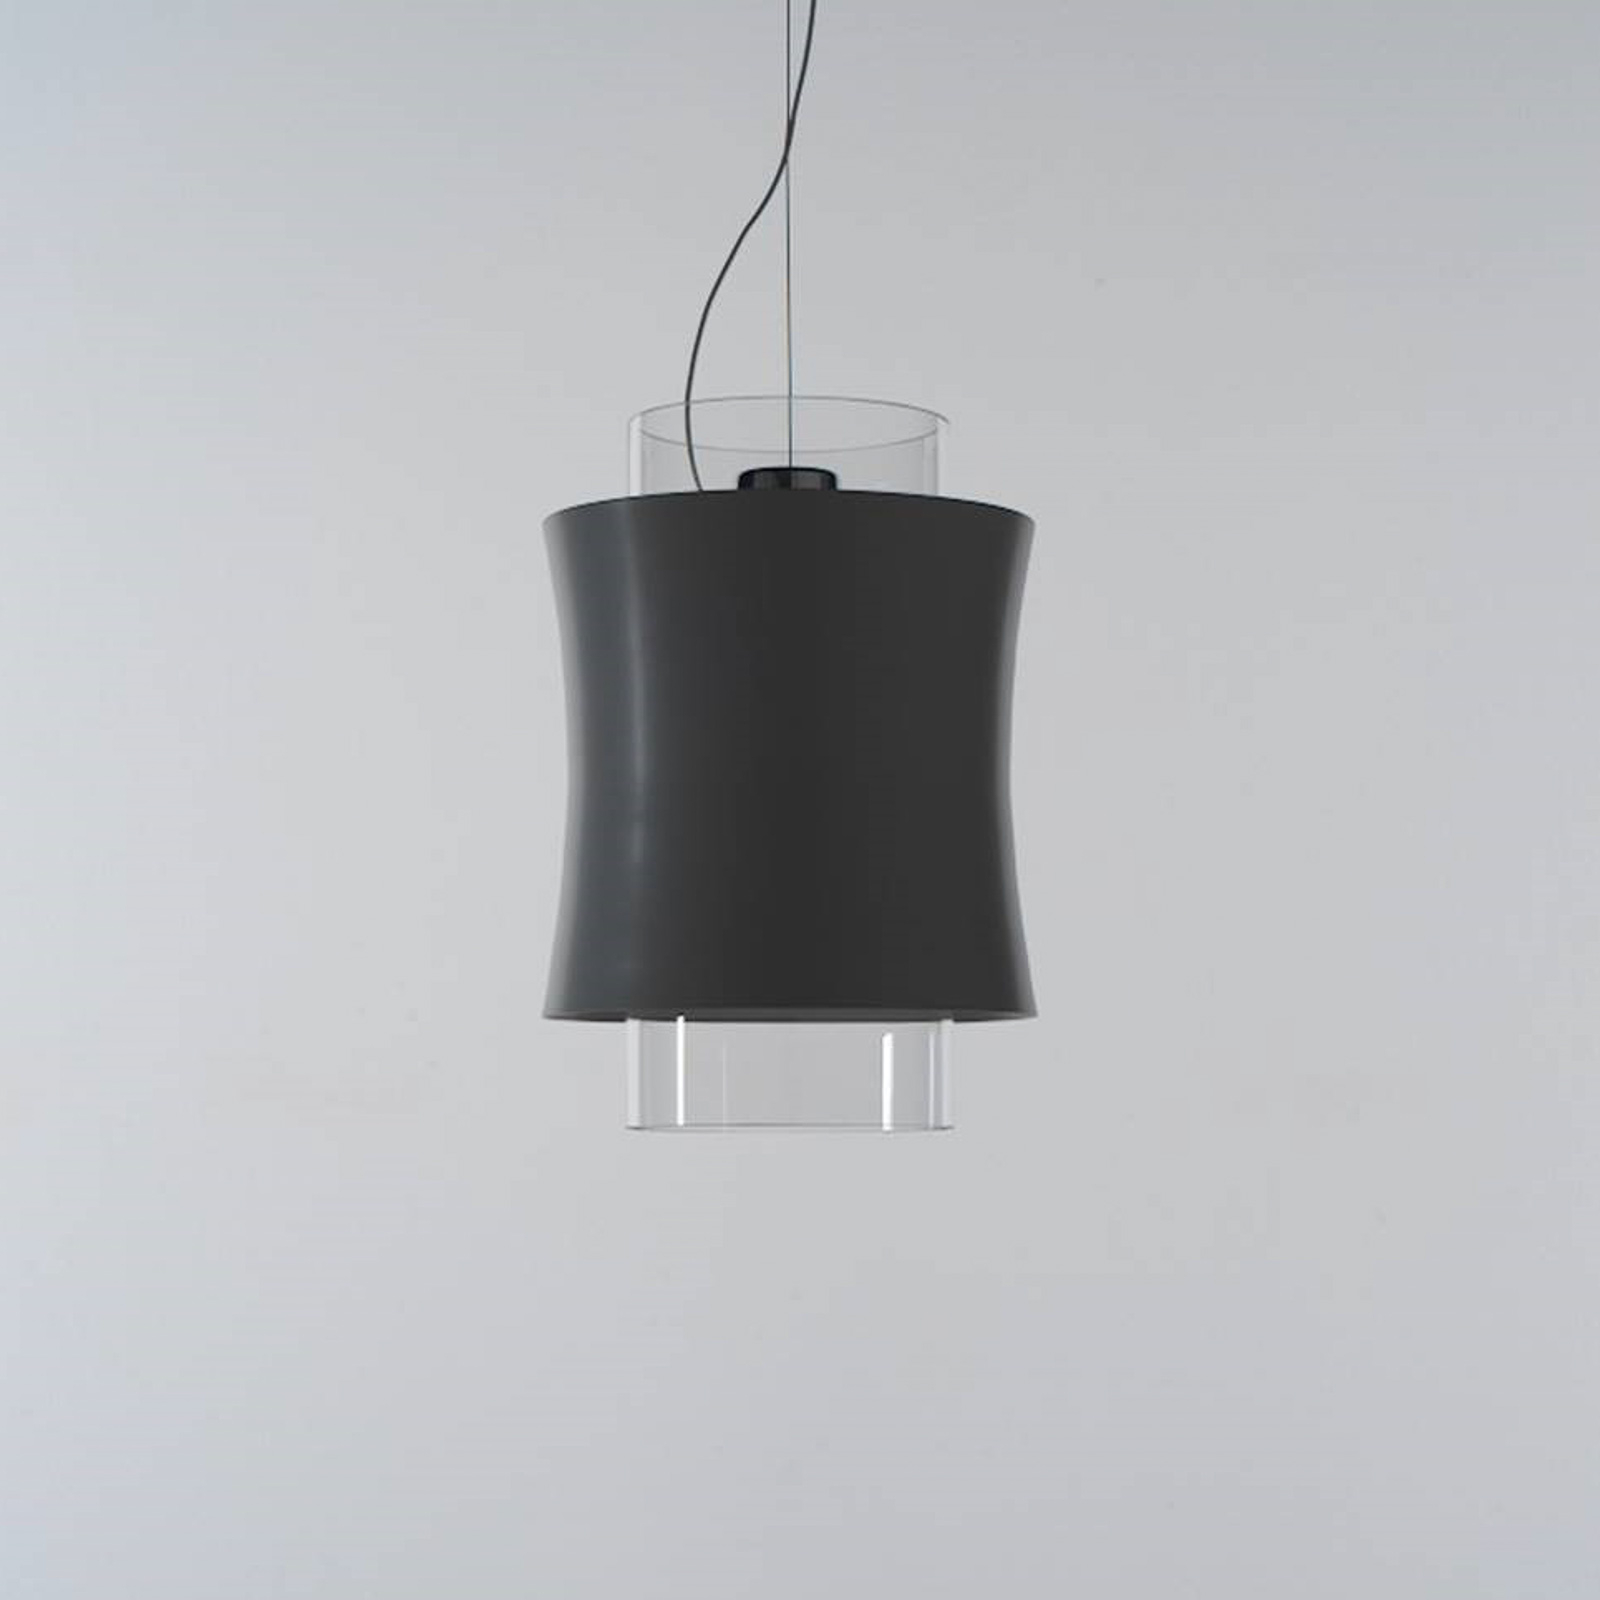 Prandina Fez S1 lampada a sospensione nero